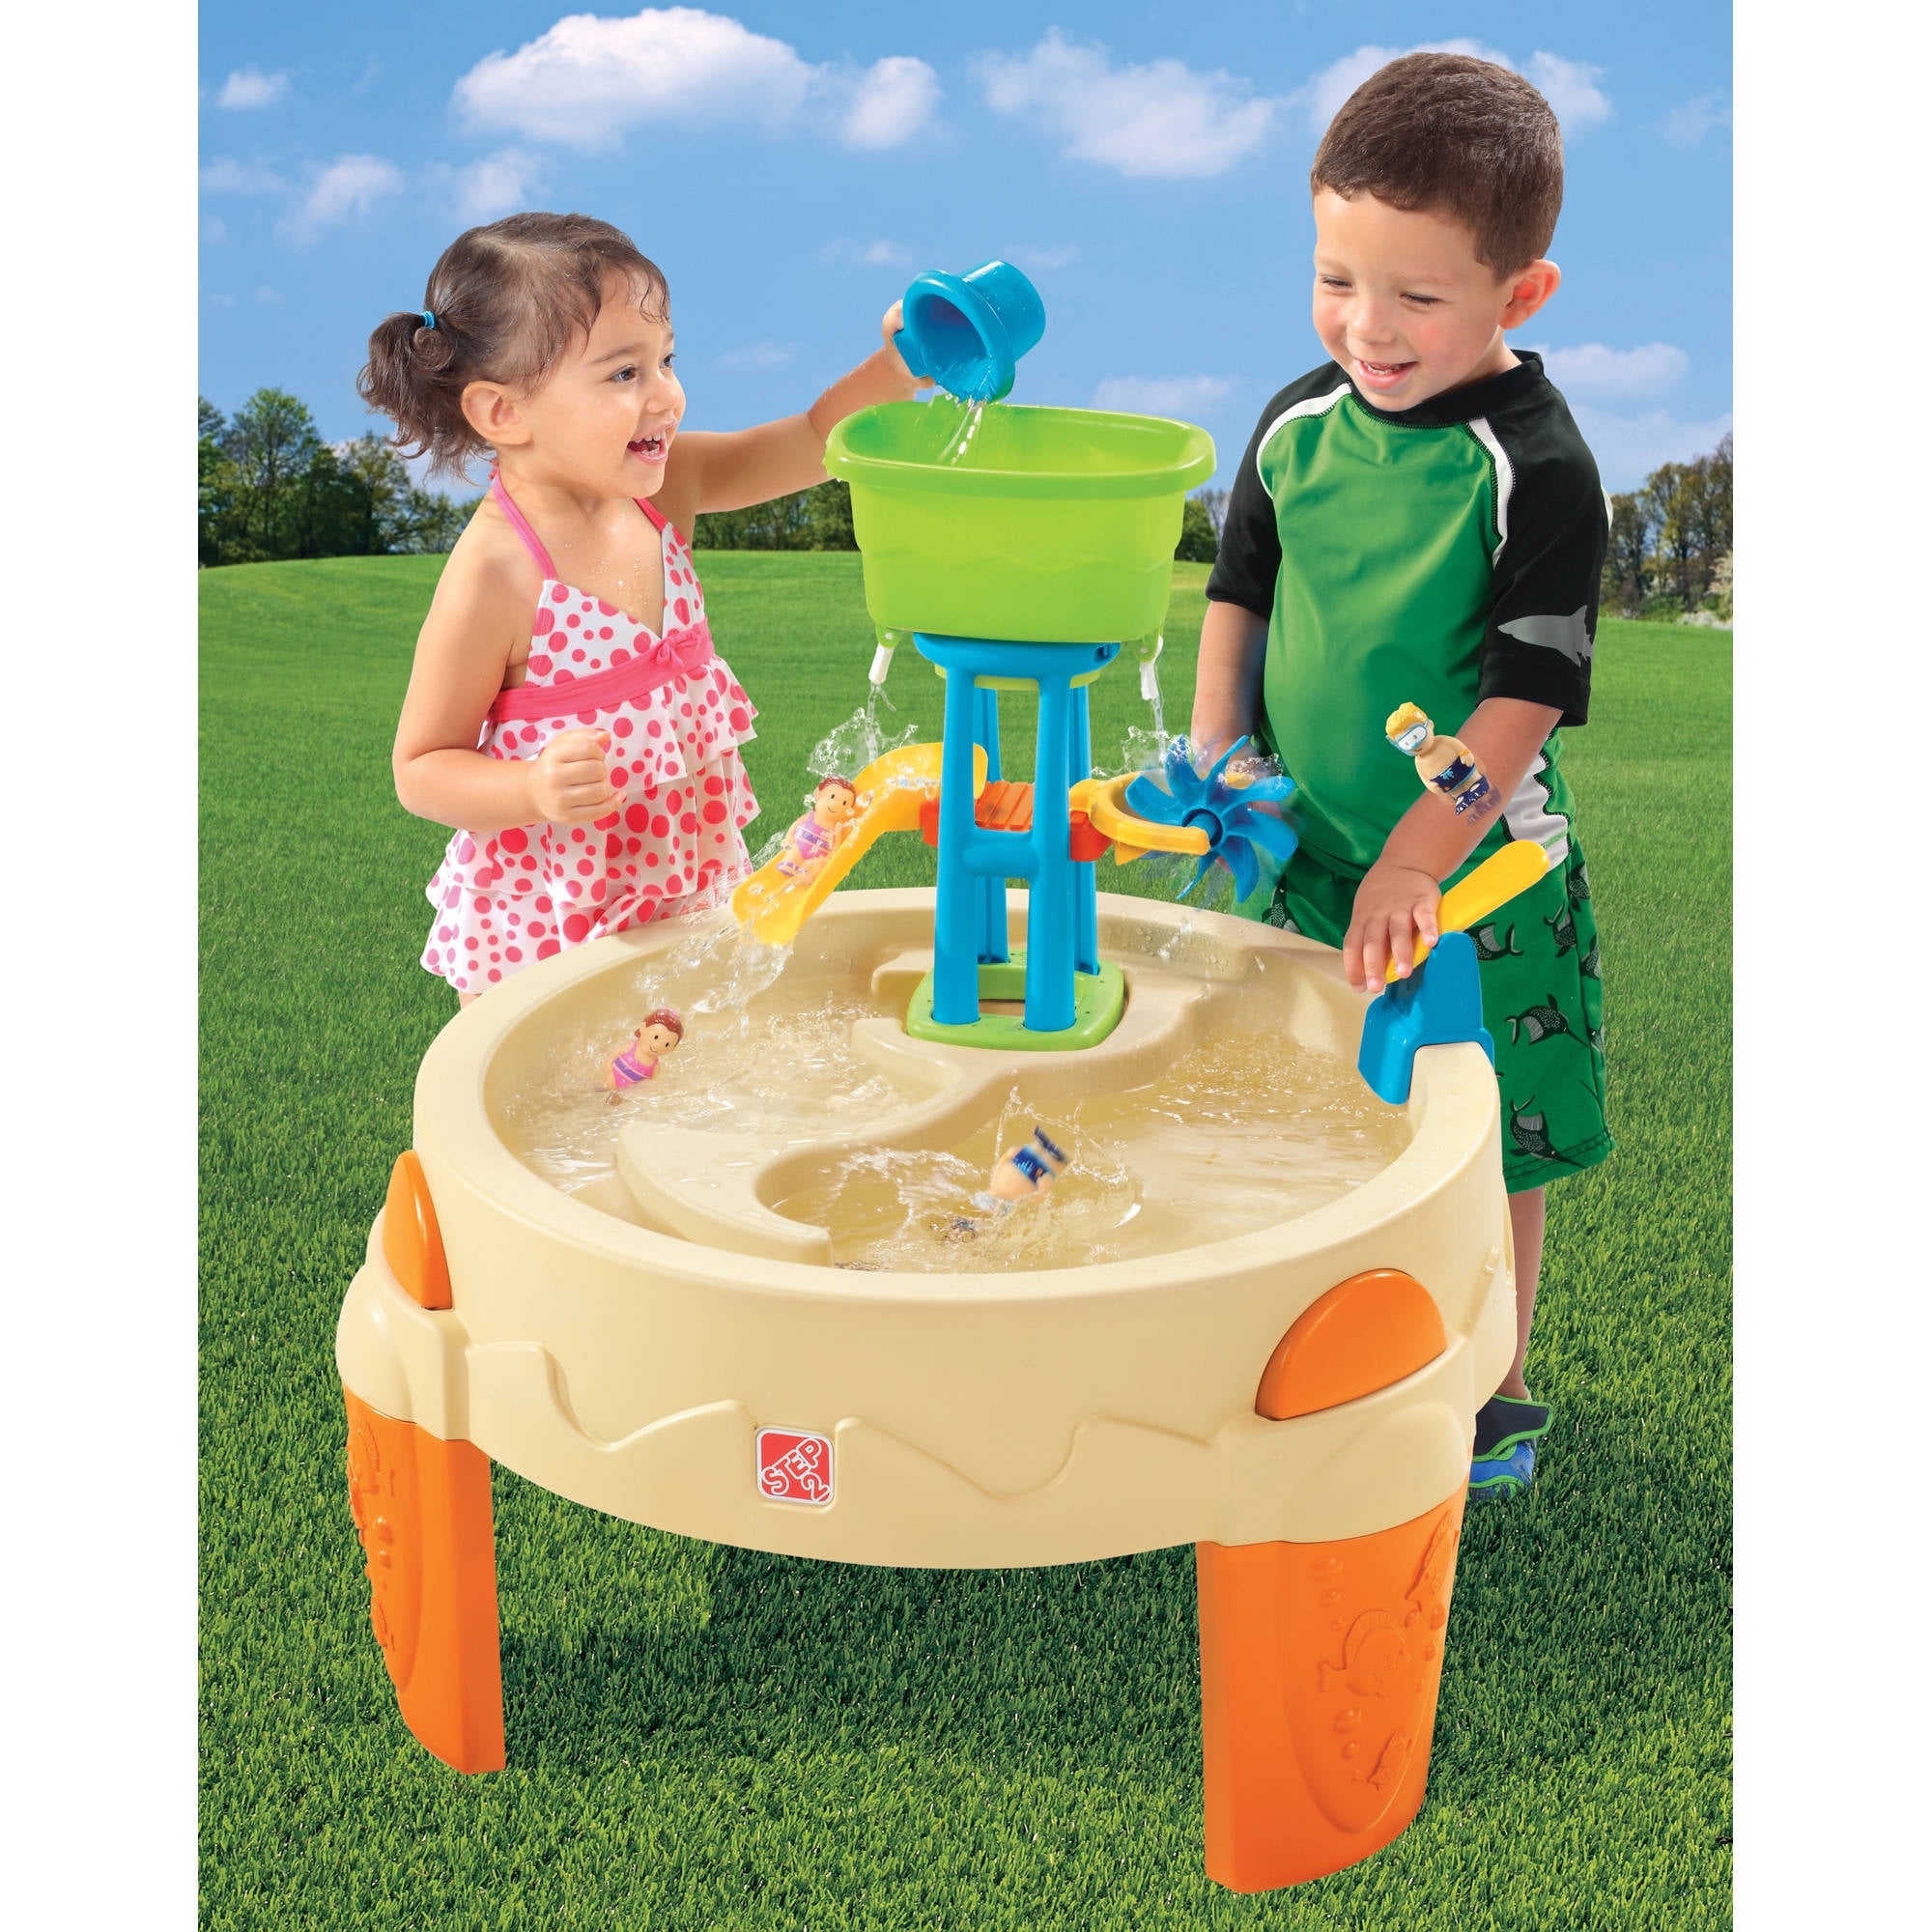 Столик для воды. Столик для песка и воды. Столик для игры с водой. Столик для игры с песком. Уличные игрушки для детей.